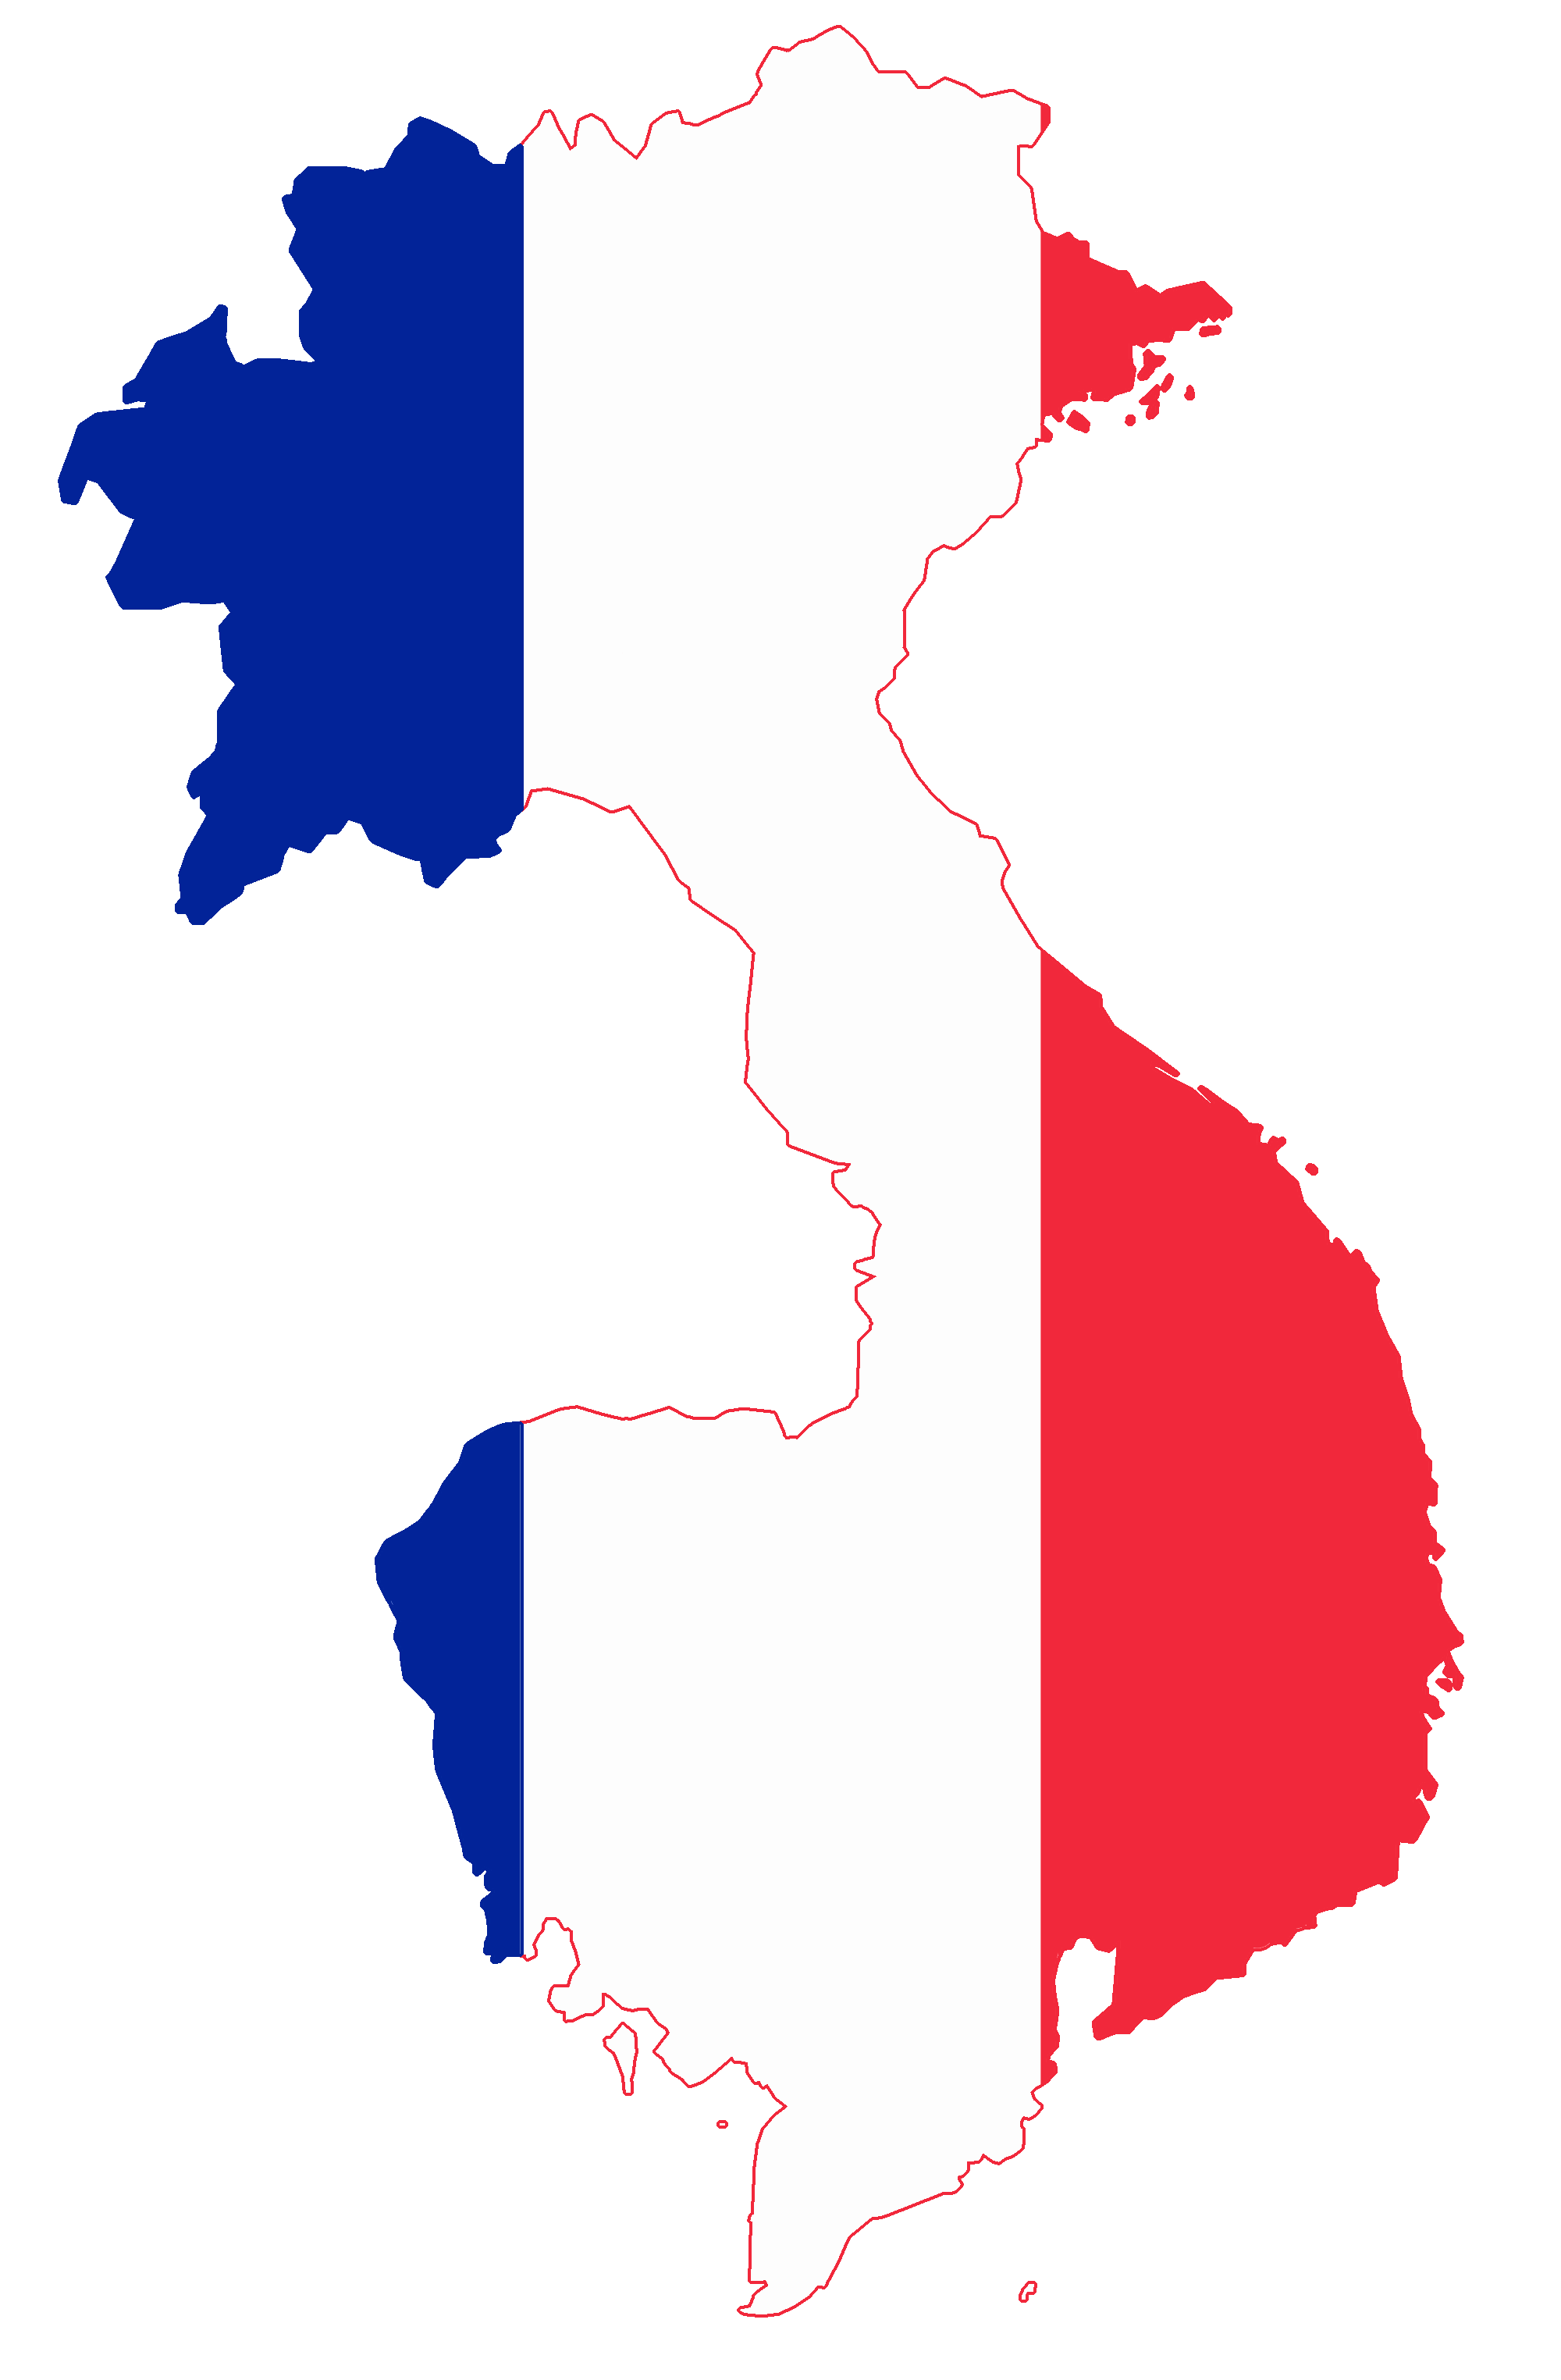 Immagine Trasparente della mappa vettoriale della Francia